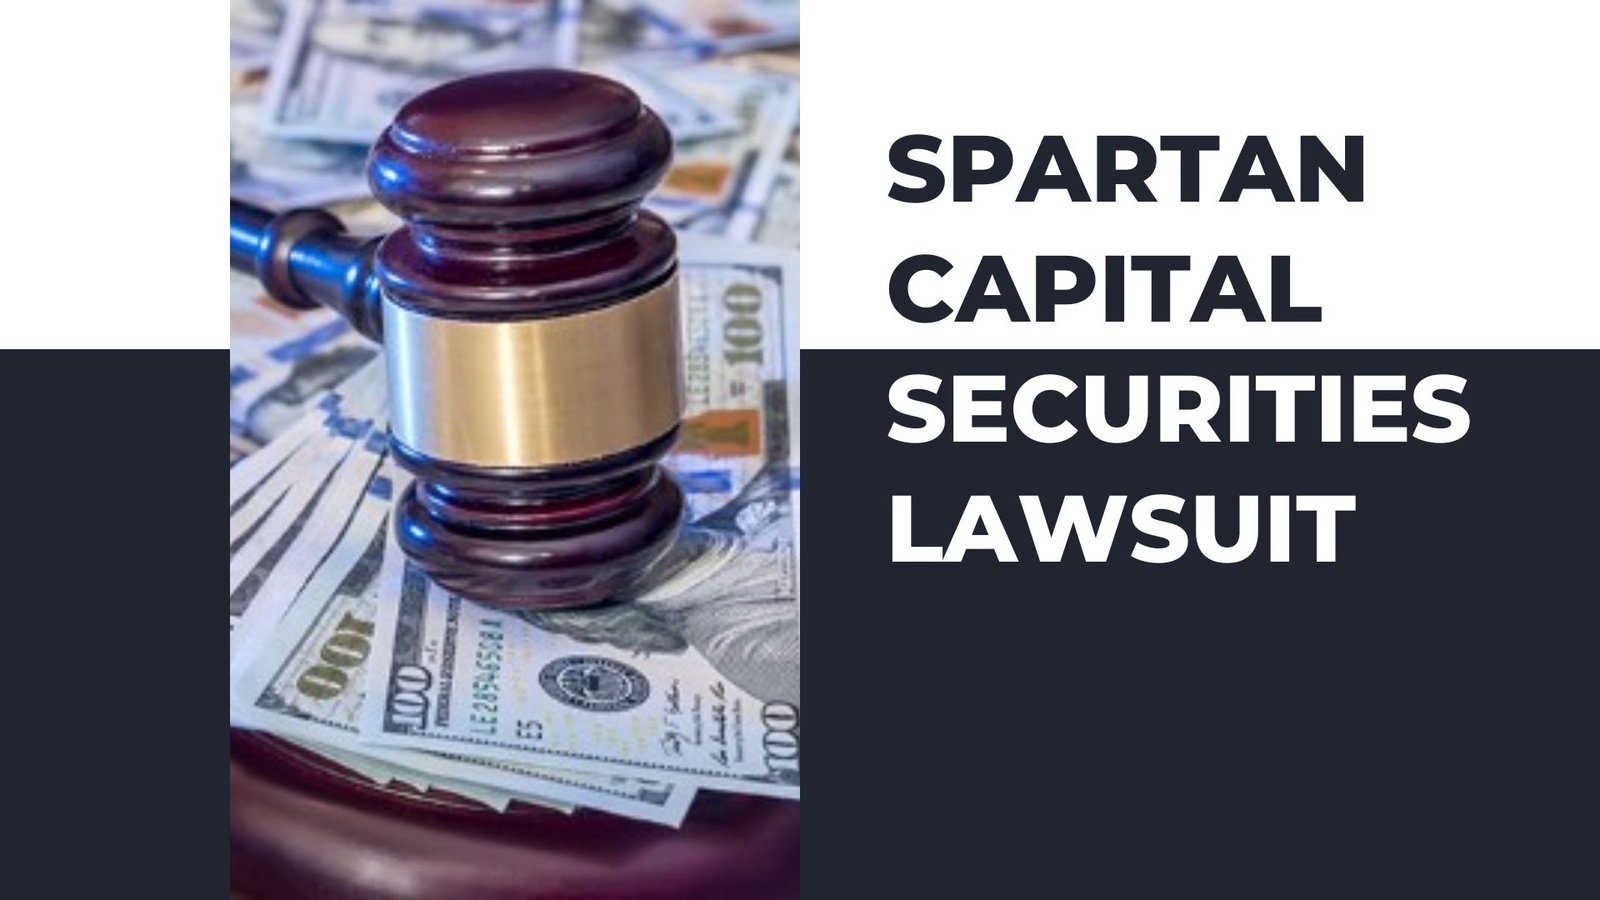 Spartan Capital Securities Lawsuit